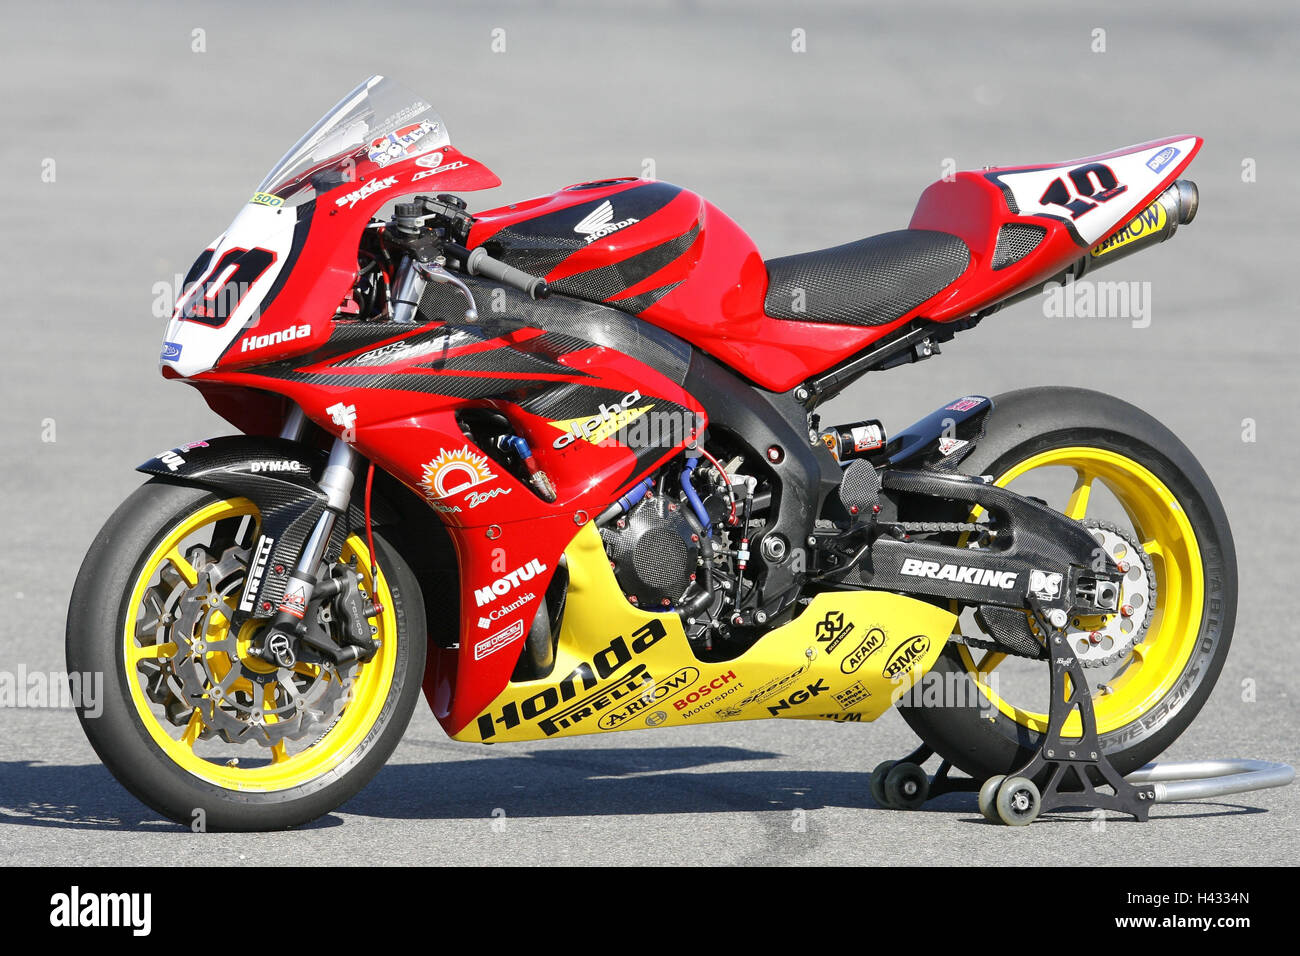 Motorrad-Broschüre IDM, Honda Racing Motor Radian, Rennstrecke  Stockfotografie - Alamy